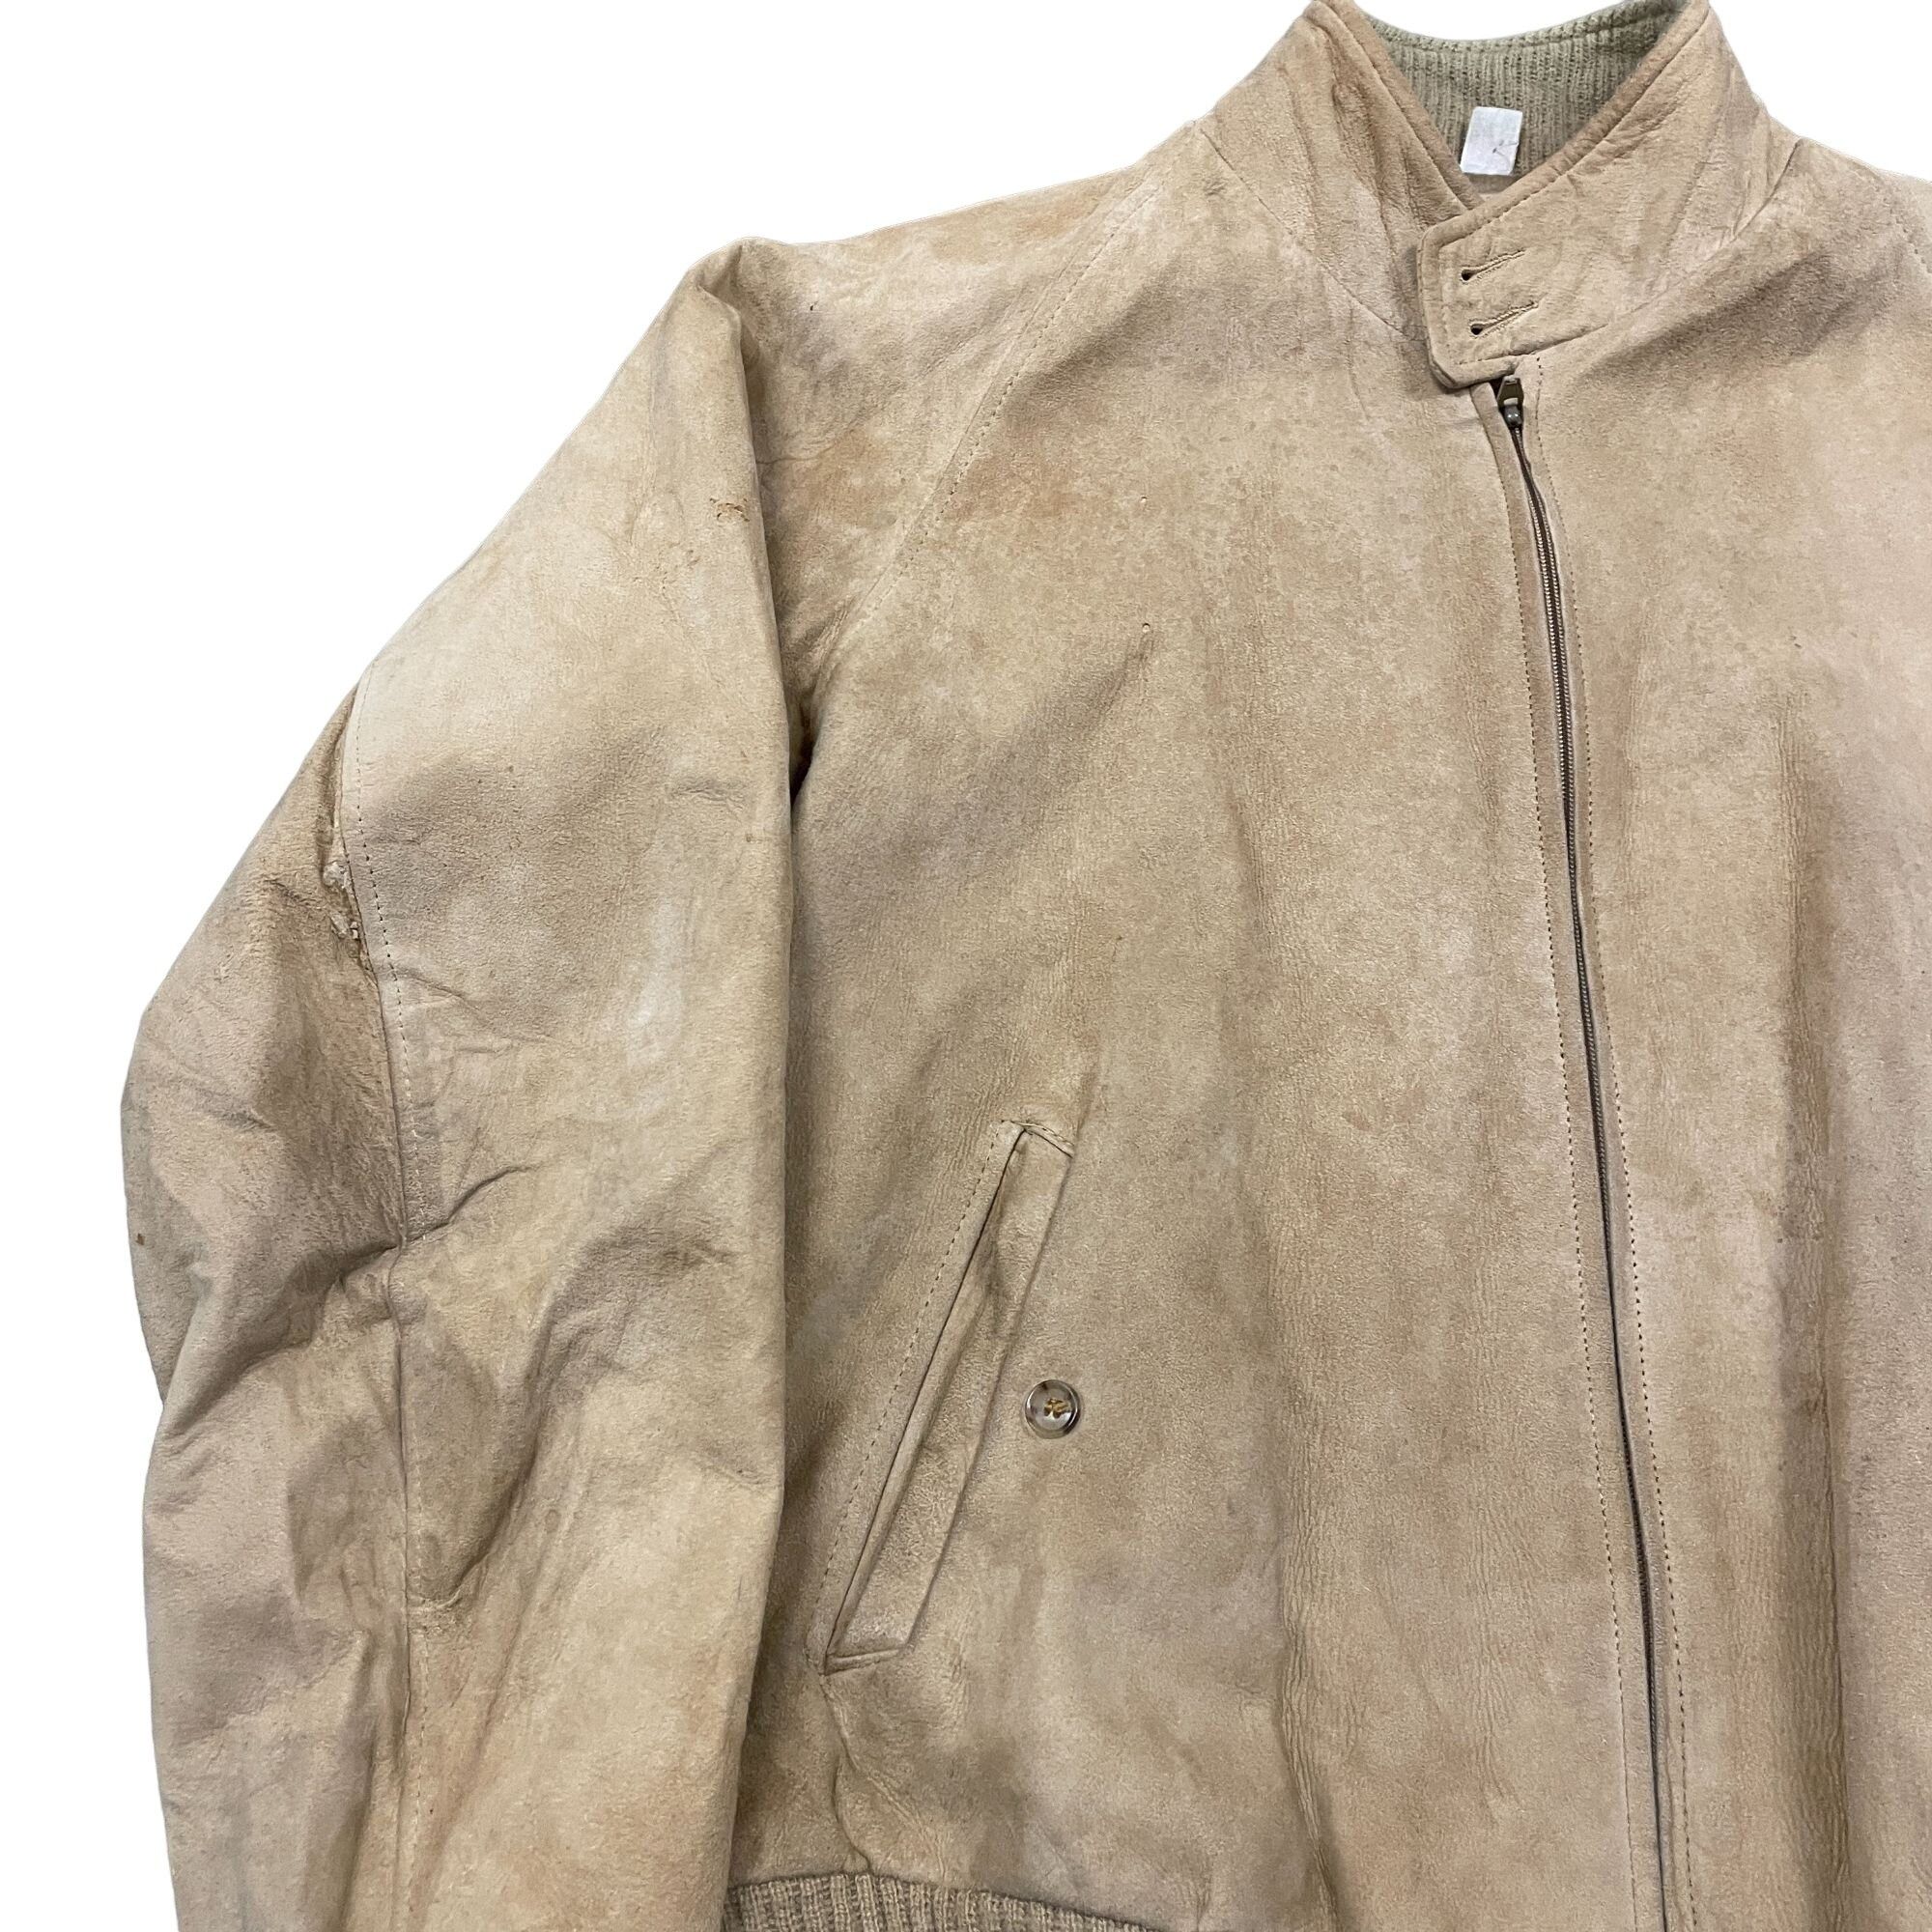 Vintage 70s/80s Vtg Broadmoor Mens Shop Beige Suede Zip Up Leather J Size US L / EU 52-54 / 3 - 6 Thumbnail